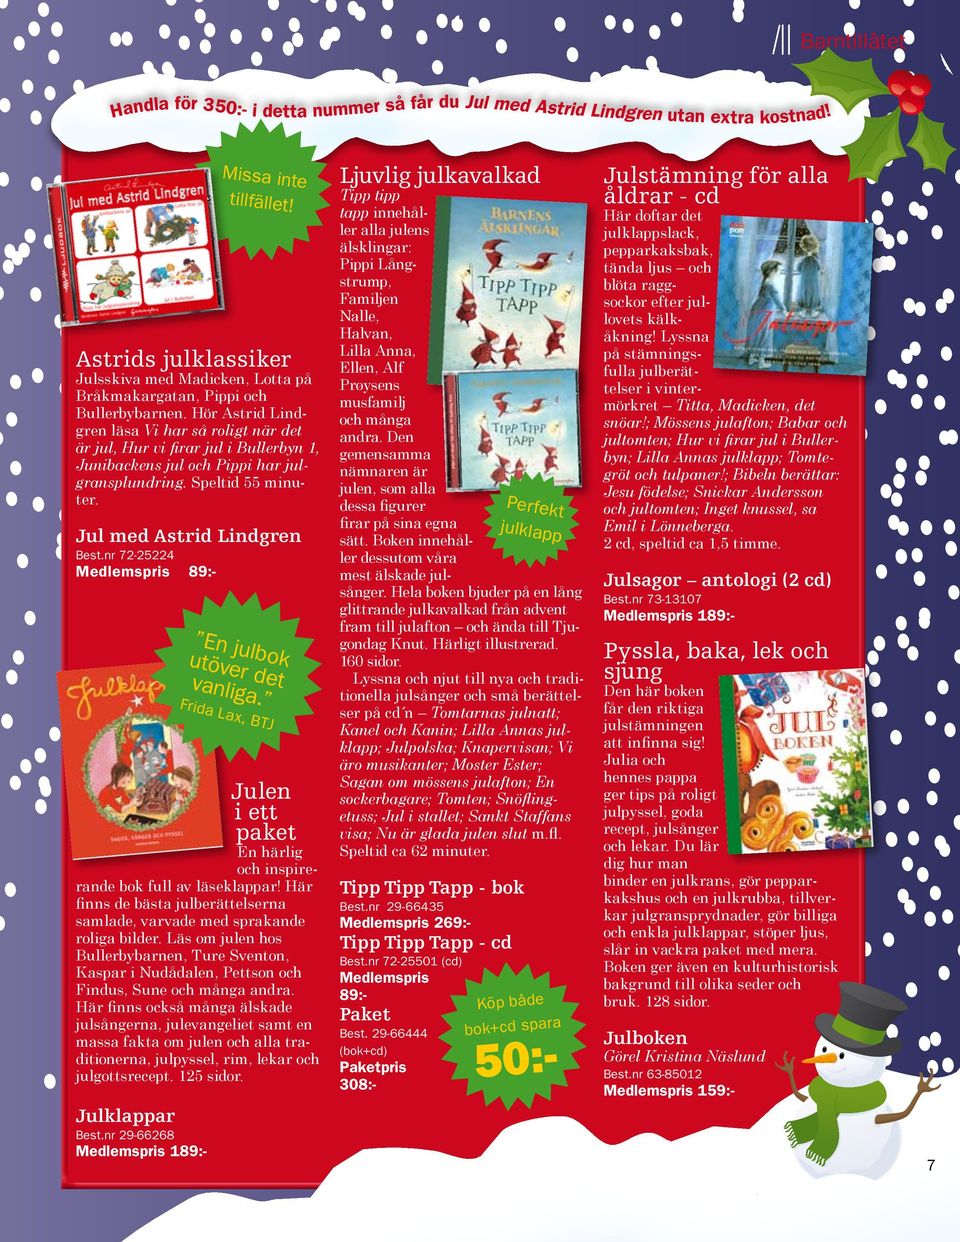 nr 72-25224 Medlemspris 89:- Julen i ett paket En härlig och inspirerande bok full av läseklappar! Här finns de bästa jul berättelserna samlade, varvade med sprakande roliga bilder.